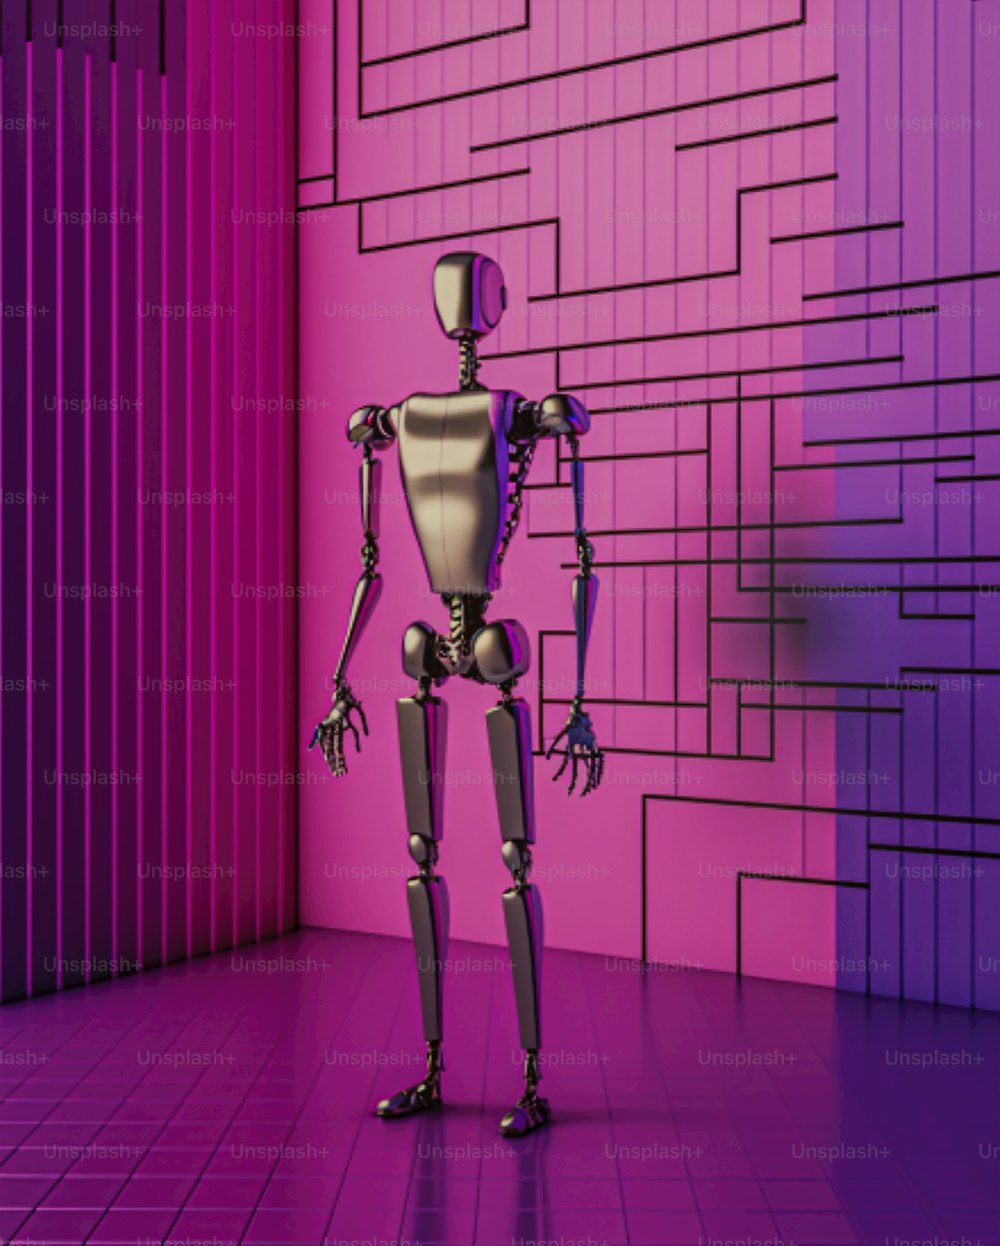 Un robot in piedi davanti a un muro rosa e viola